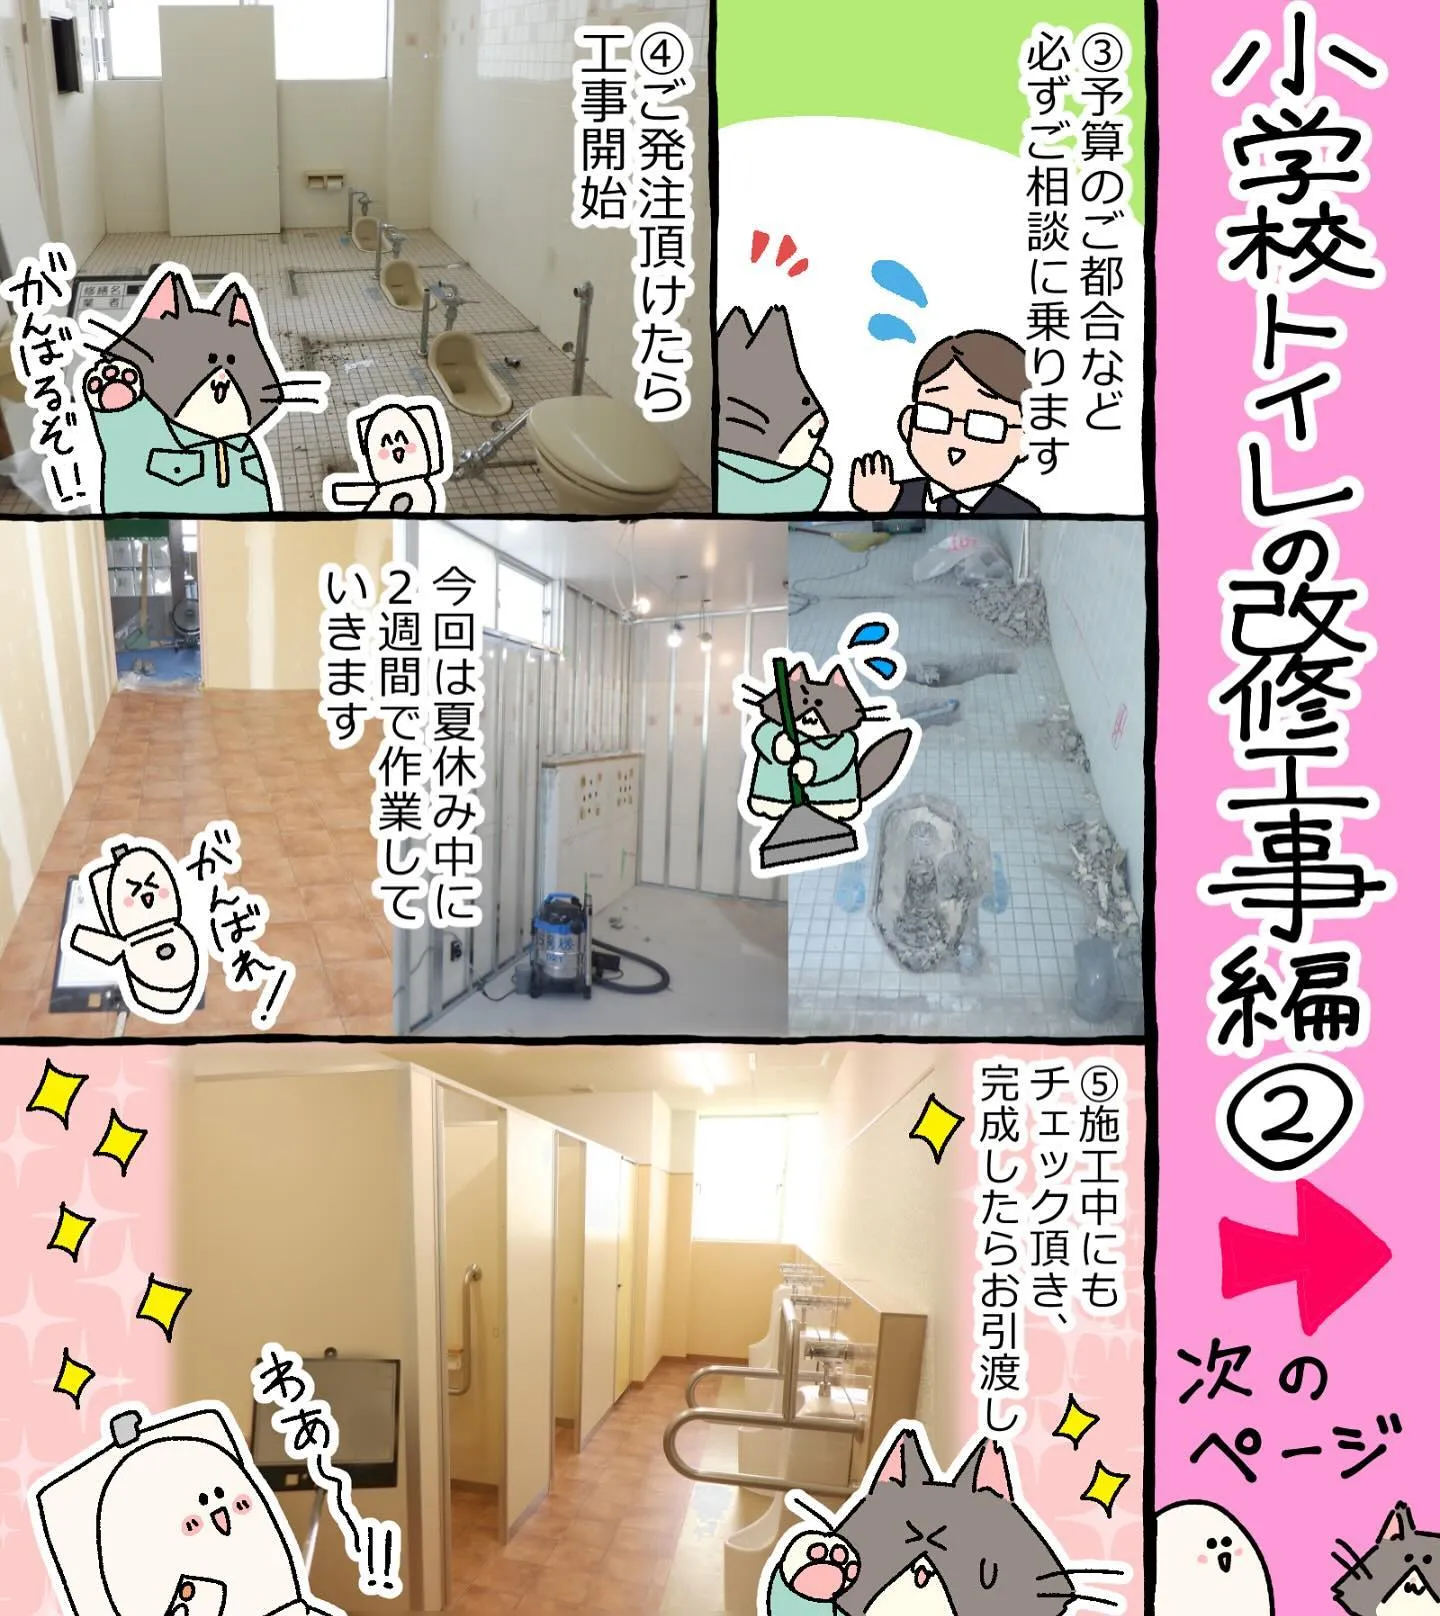 【漫画】小学校トイレの改修工事